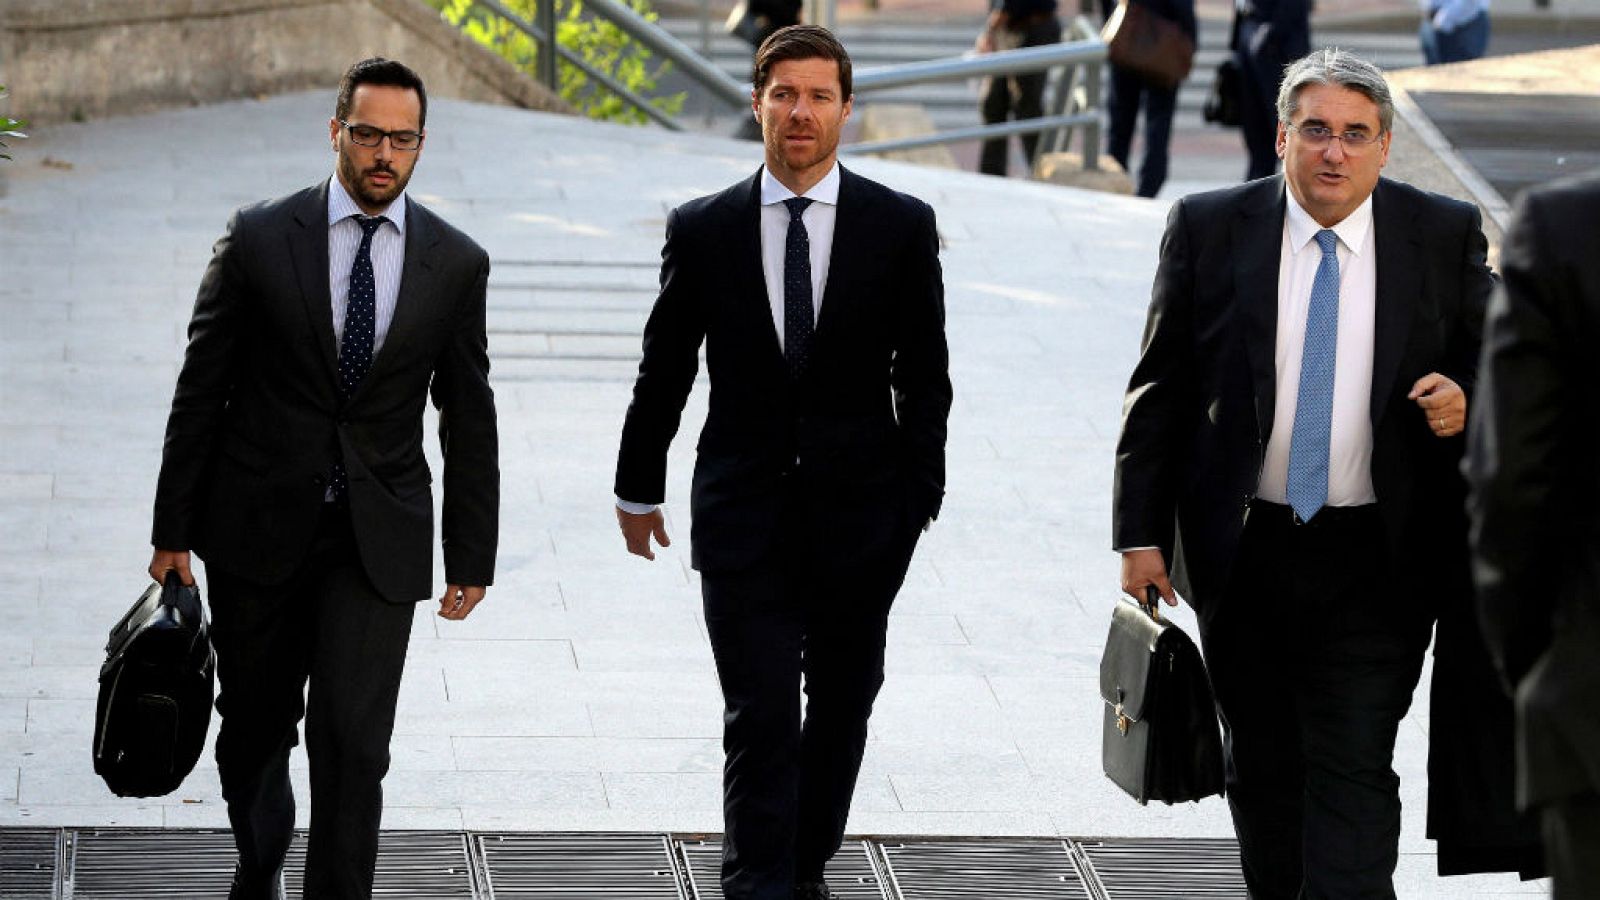 Boletines RNE - Xabi Alonso se sienta en el banquillo por presunto fraude fiscal - Escuchar ahora 